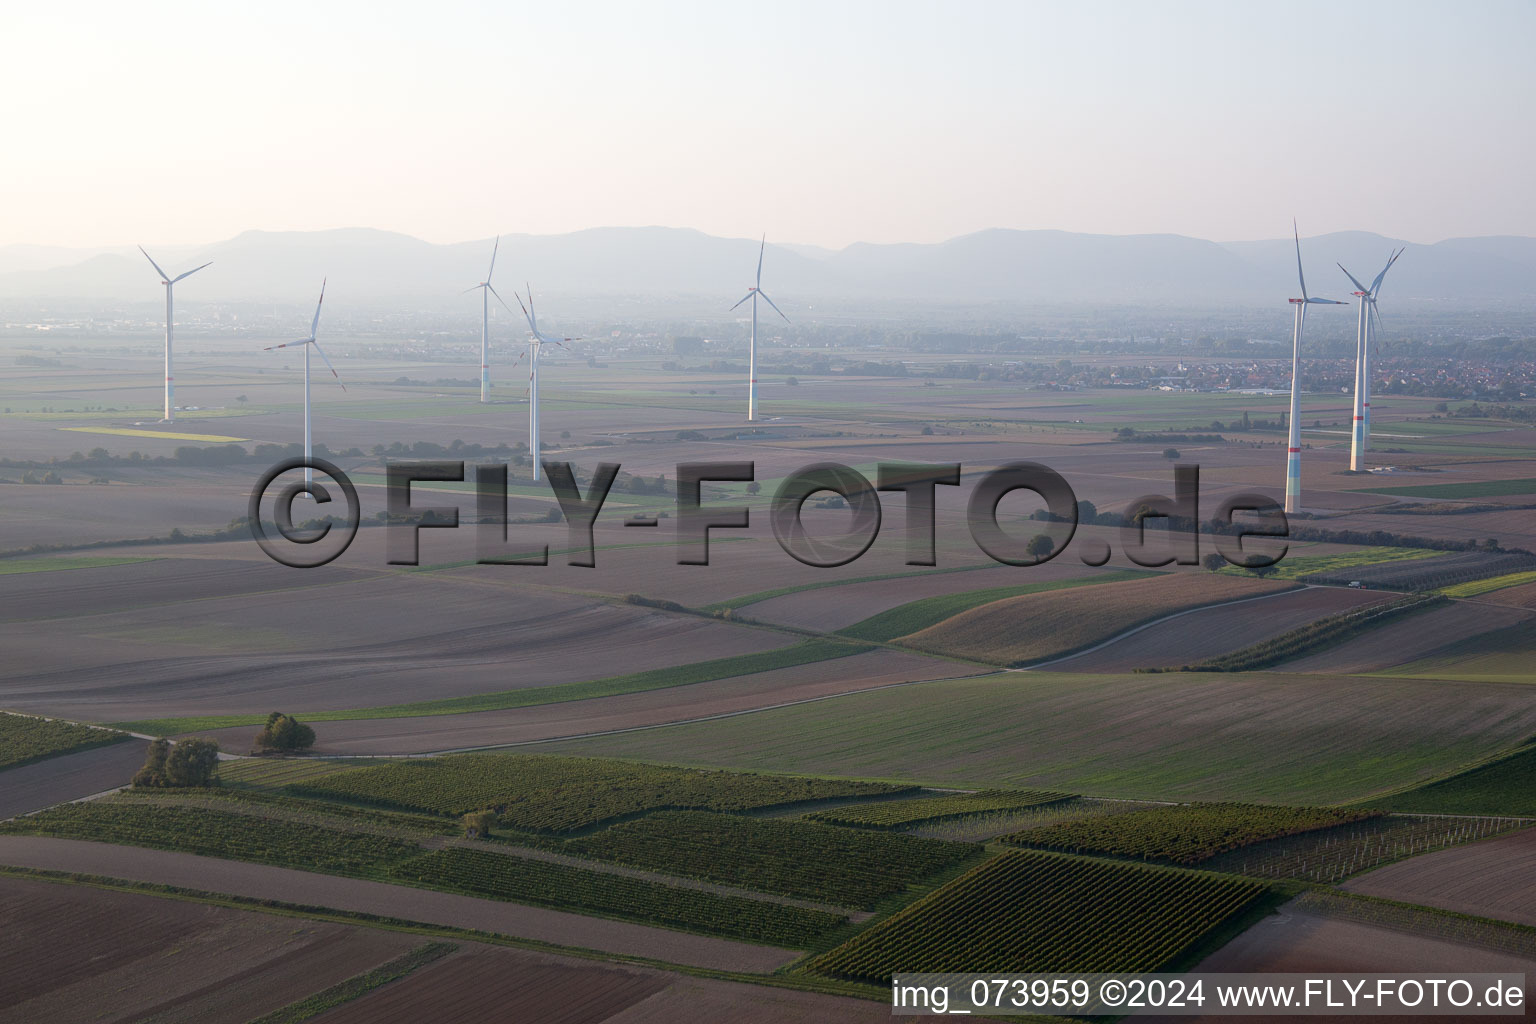 Vue aérienne de Parc éolien à Offenbach an der Queich dans le département Rhénanie-Palatinat, Allemagne